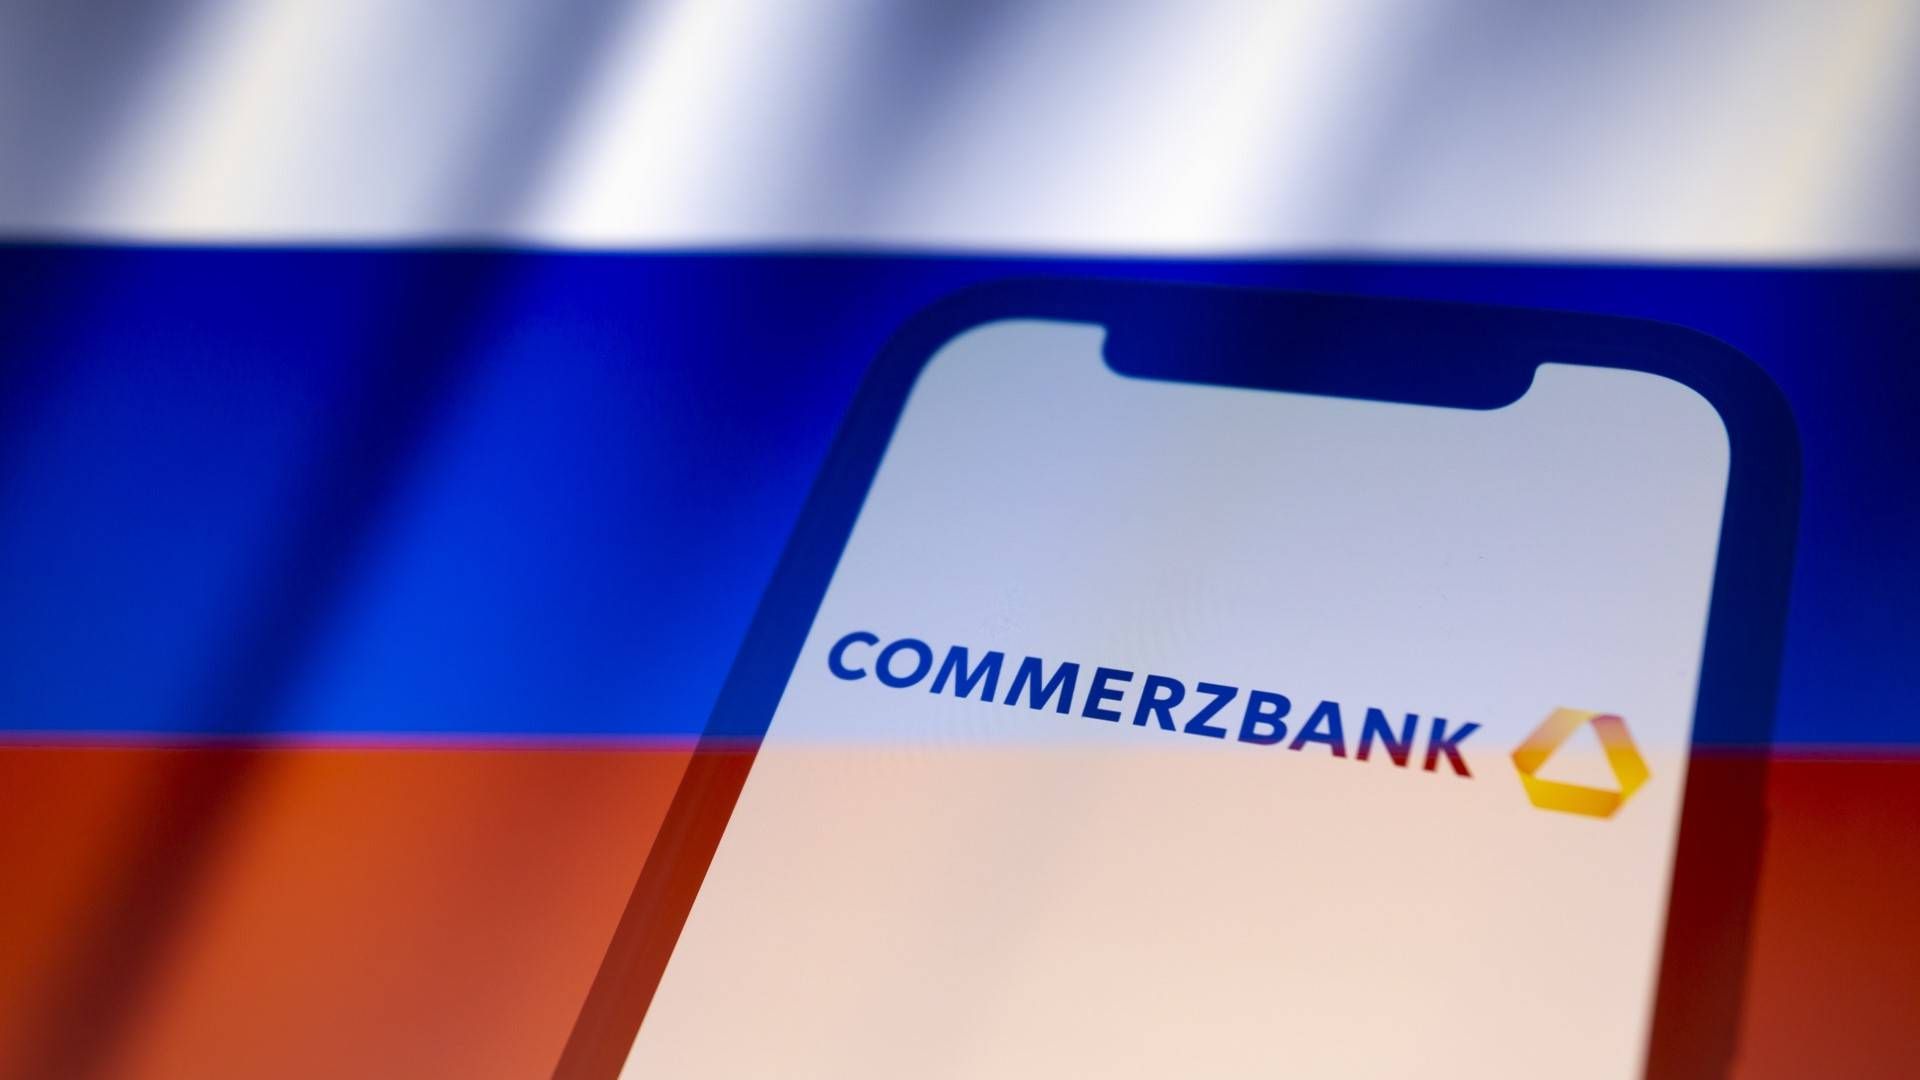 Commerzbank-App vor Russland-Flagge (Symbolbild) | Foto: picture alliance / ZUMAPRESS.com | Andre M. Chang